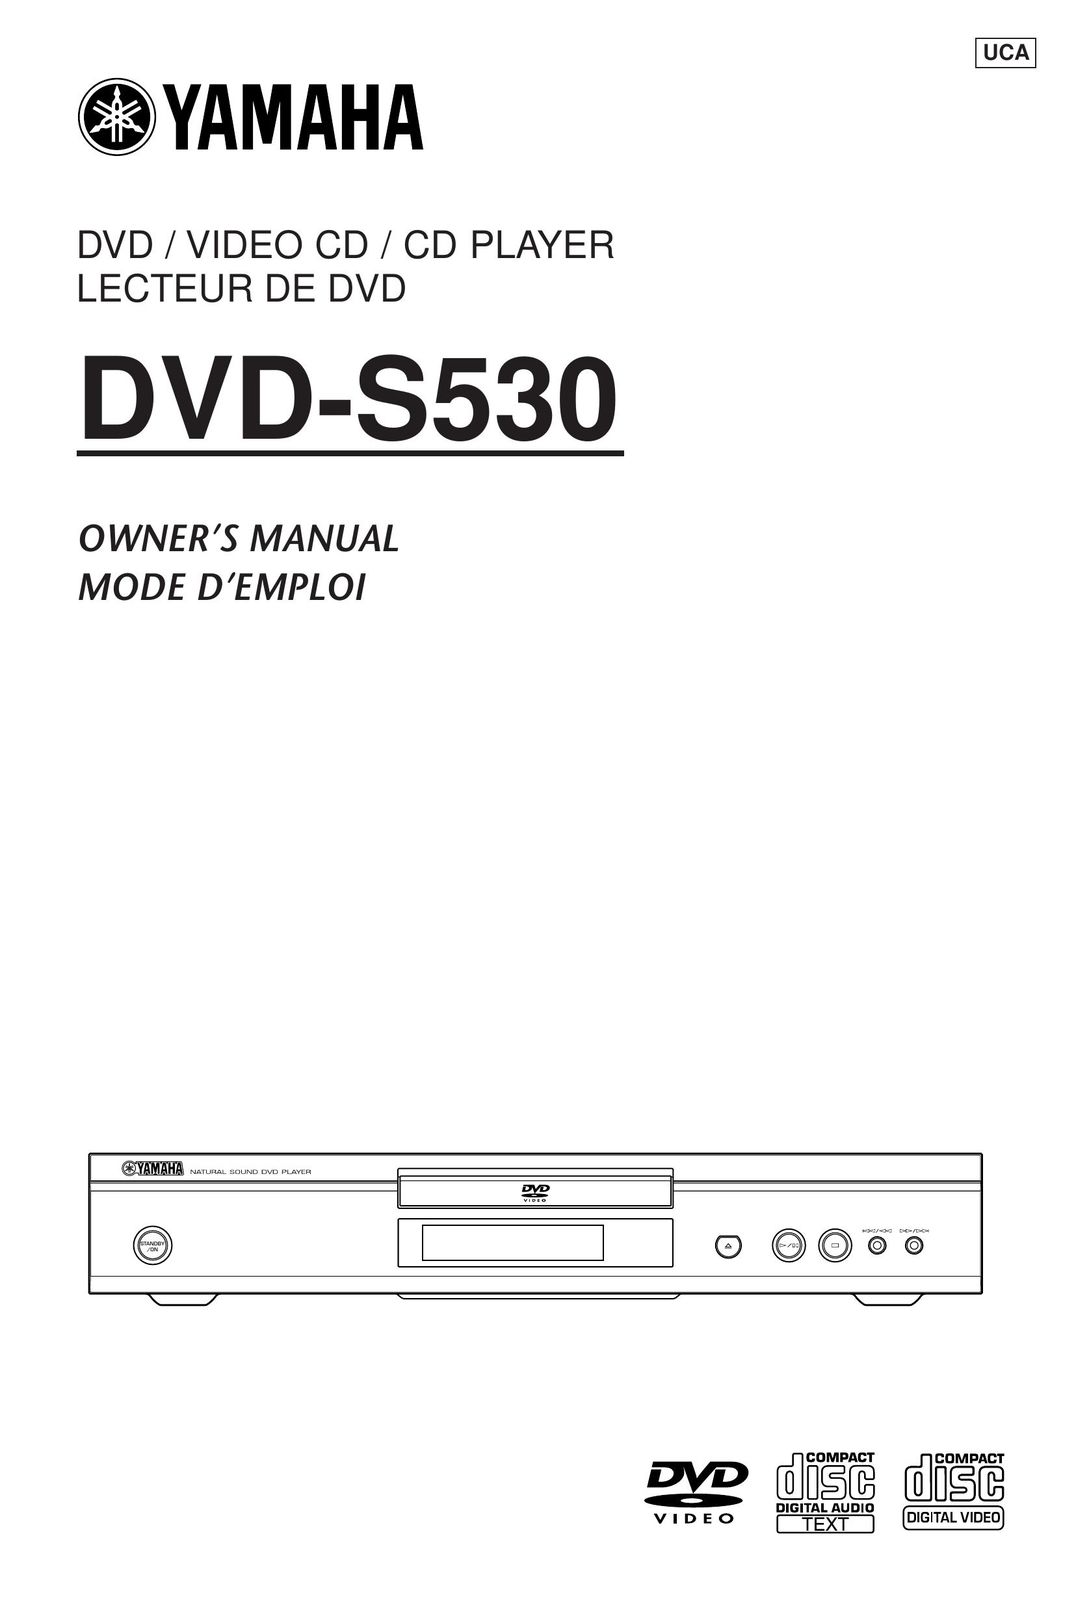 Yamaha DVD-S530 DVD VCR Combo User Manual